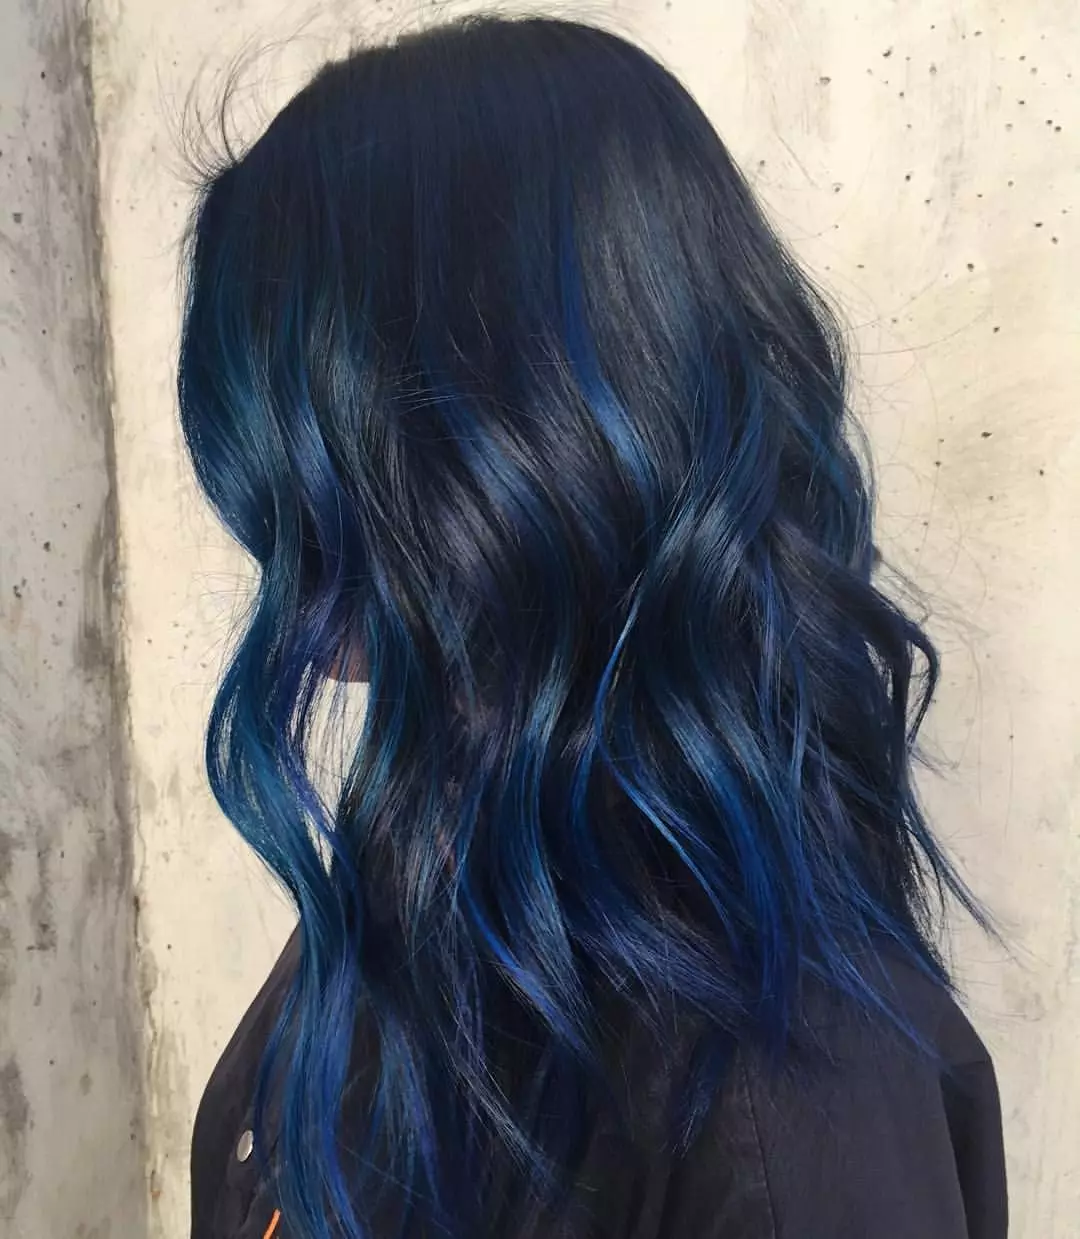 צבע שיער כחול: סקירה של צבעי שיער עמיד עם צבת כחול, מ כחול בהיר לגוונים שחורים וכחולים 5402_50